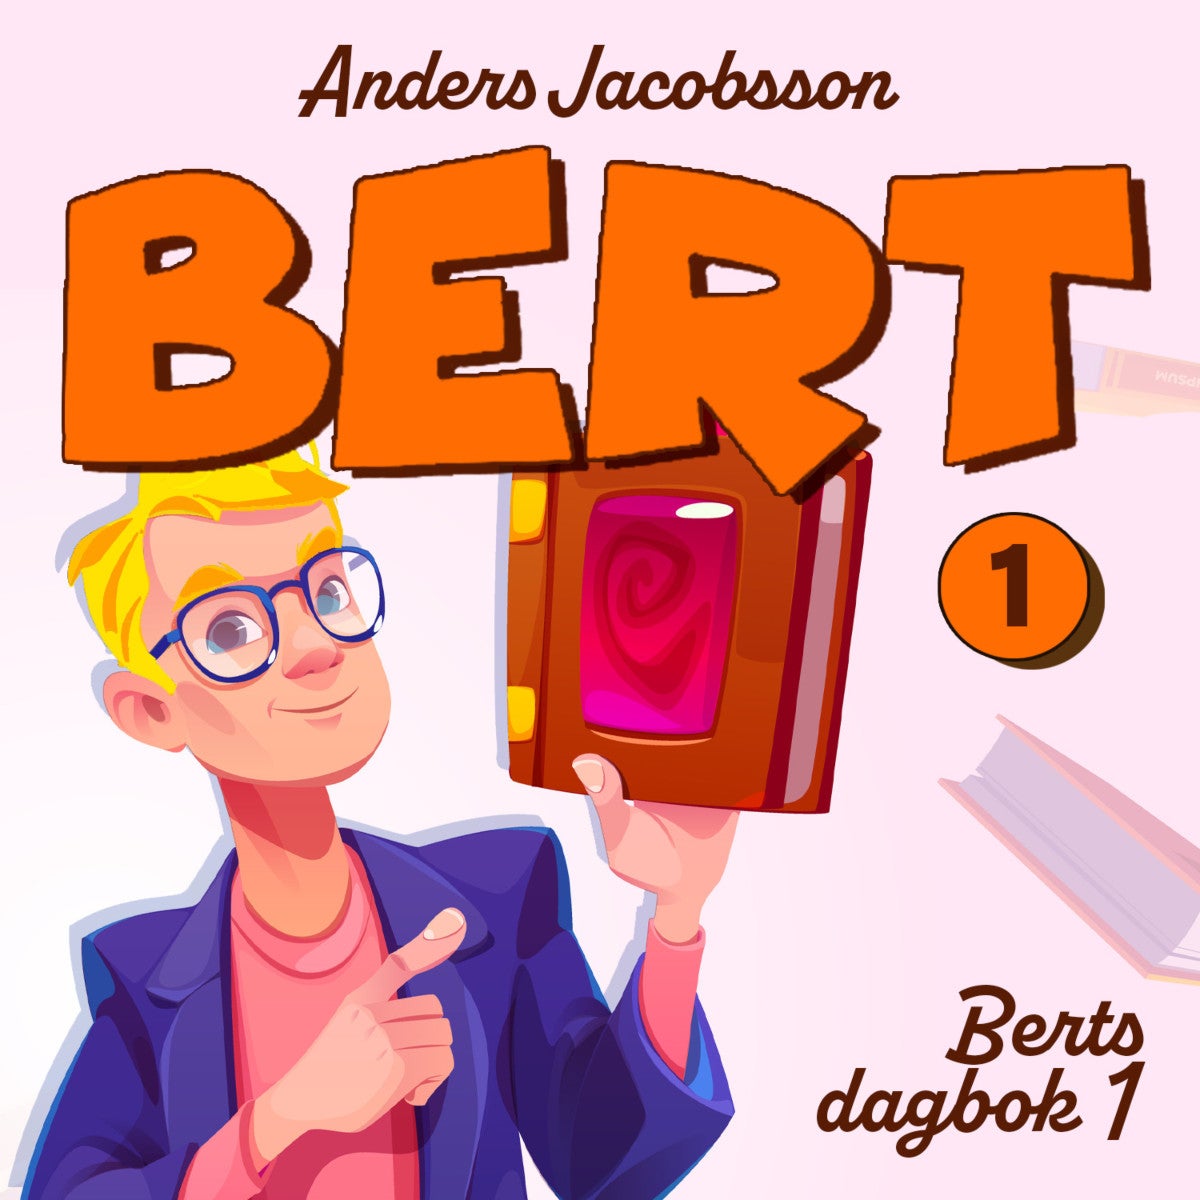 Berts dagbok av Anders Jacobsson, Sören Olsson